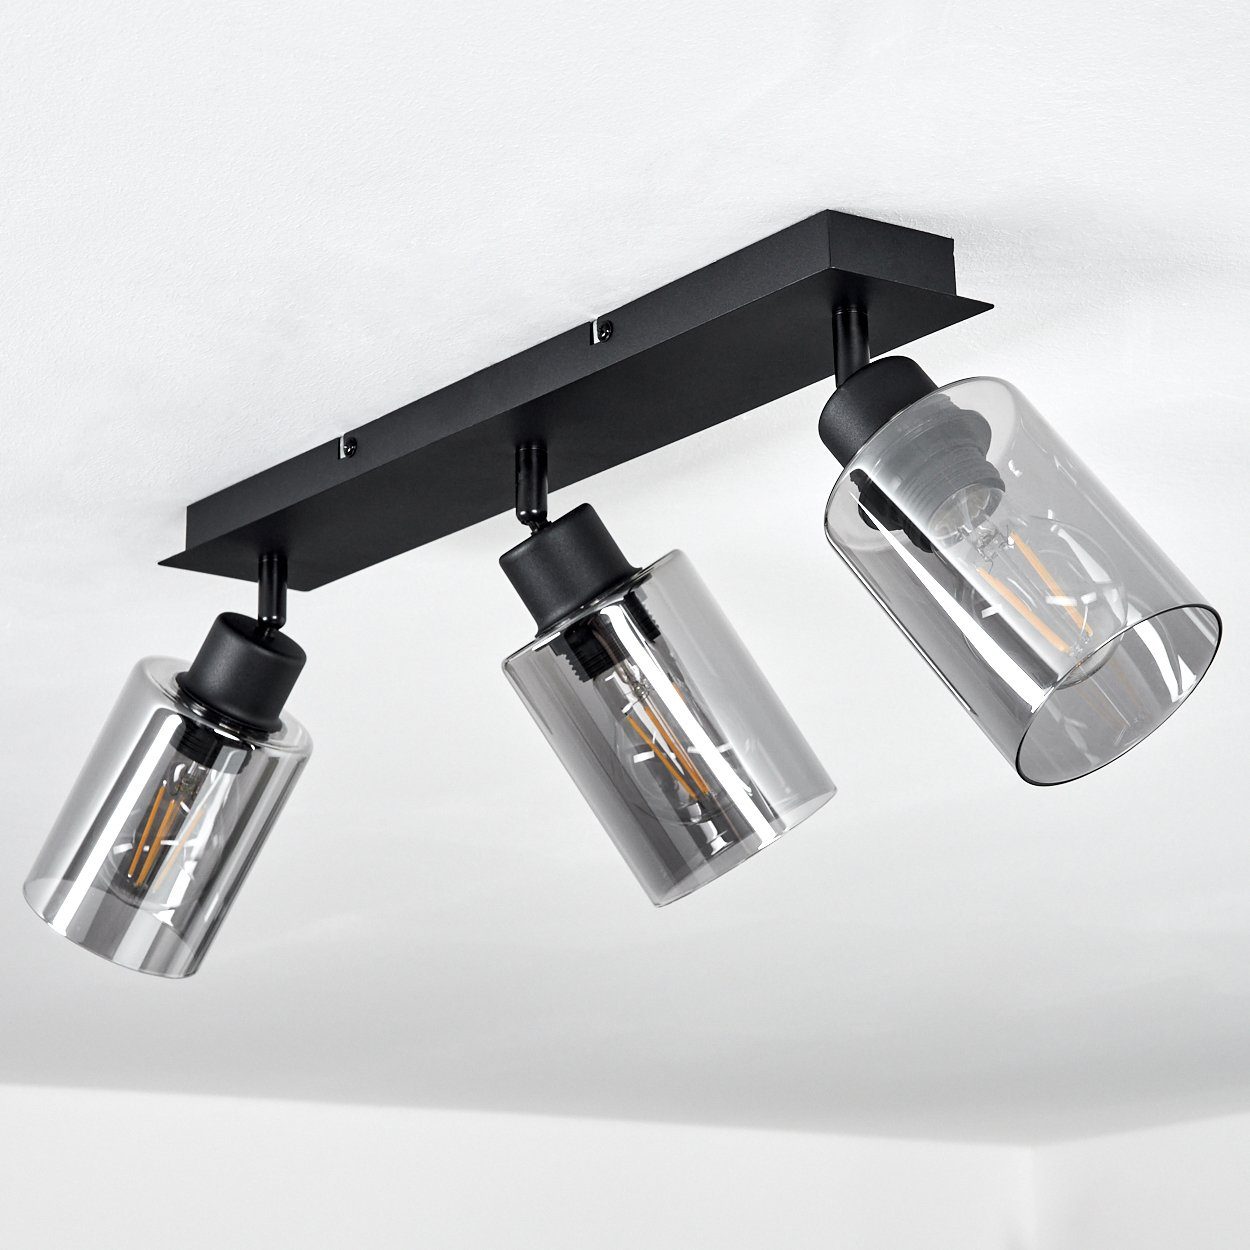 Metall/Glas mit sind Deckenlampe E27, drehbar »Bovo« Rauchglasschirmen, aus Schwarz/Rauchfarben, Leuchtmittel, Deckenleuchte hofstein ohne Schirme in